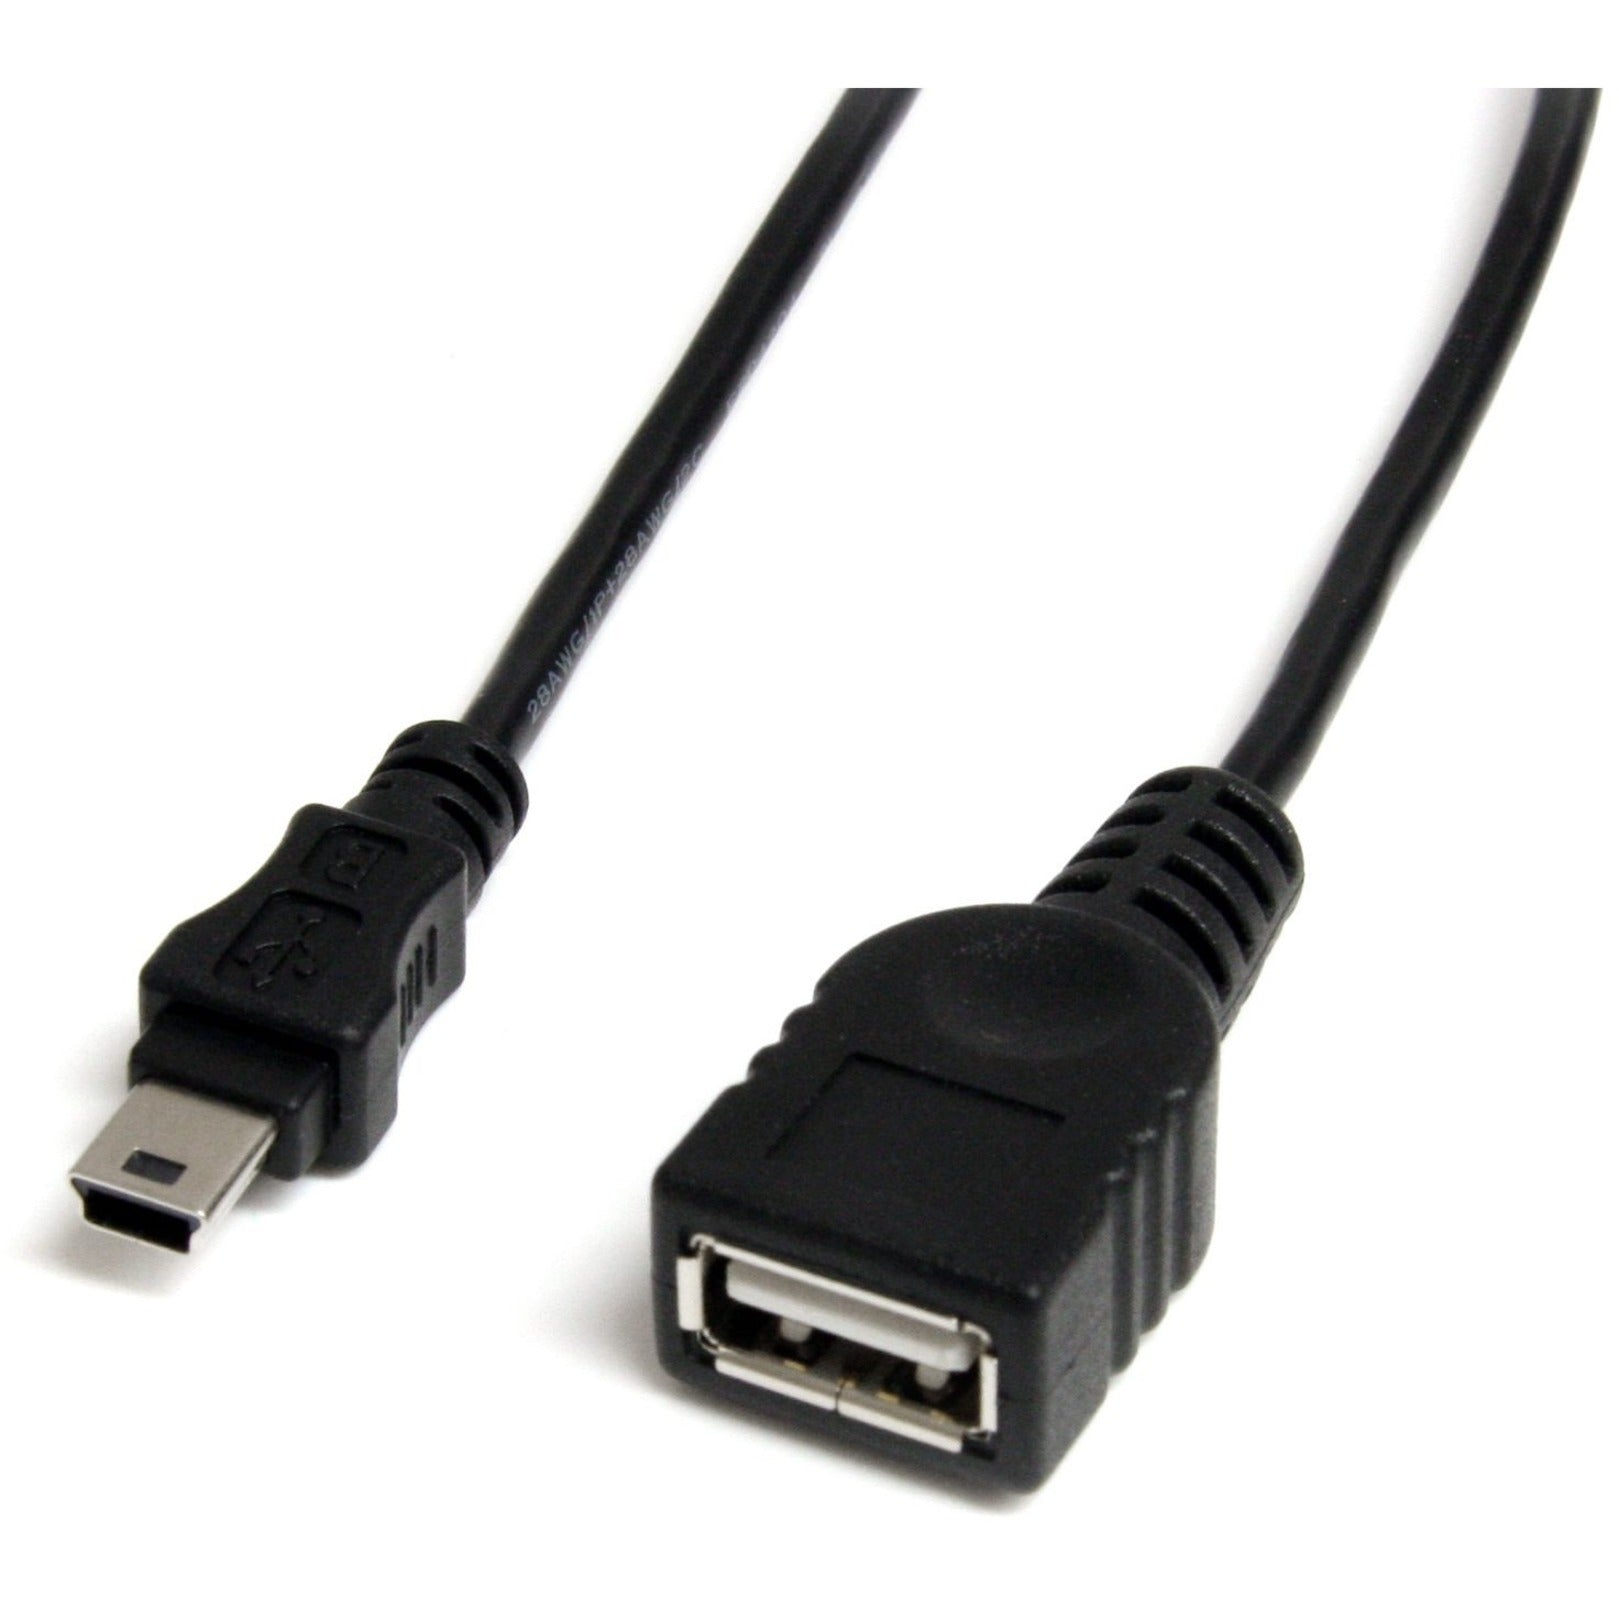 StarTech.com USBMUSBFM1 1 ft Mini USB 2.0 Kabel USB A zu Mini B F/M Datenübertragungskabel